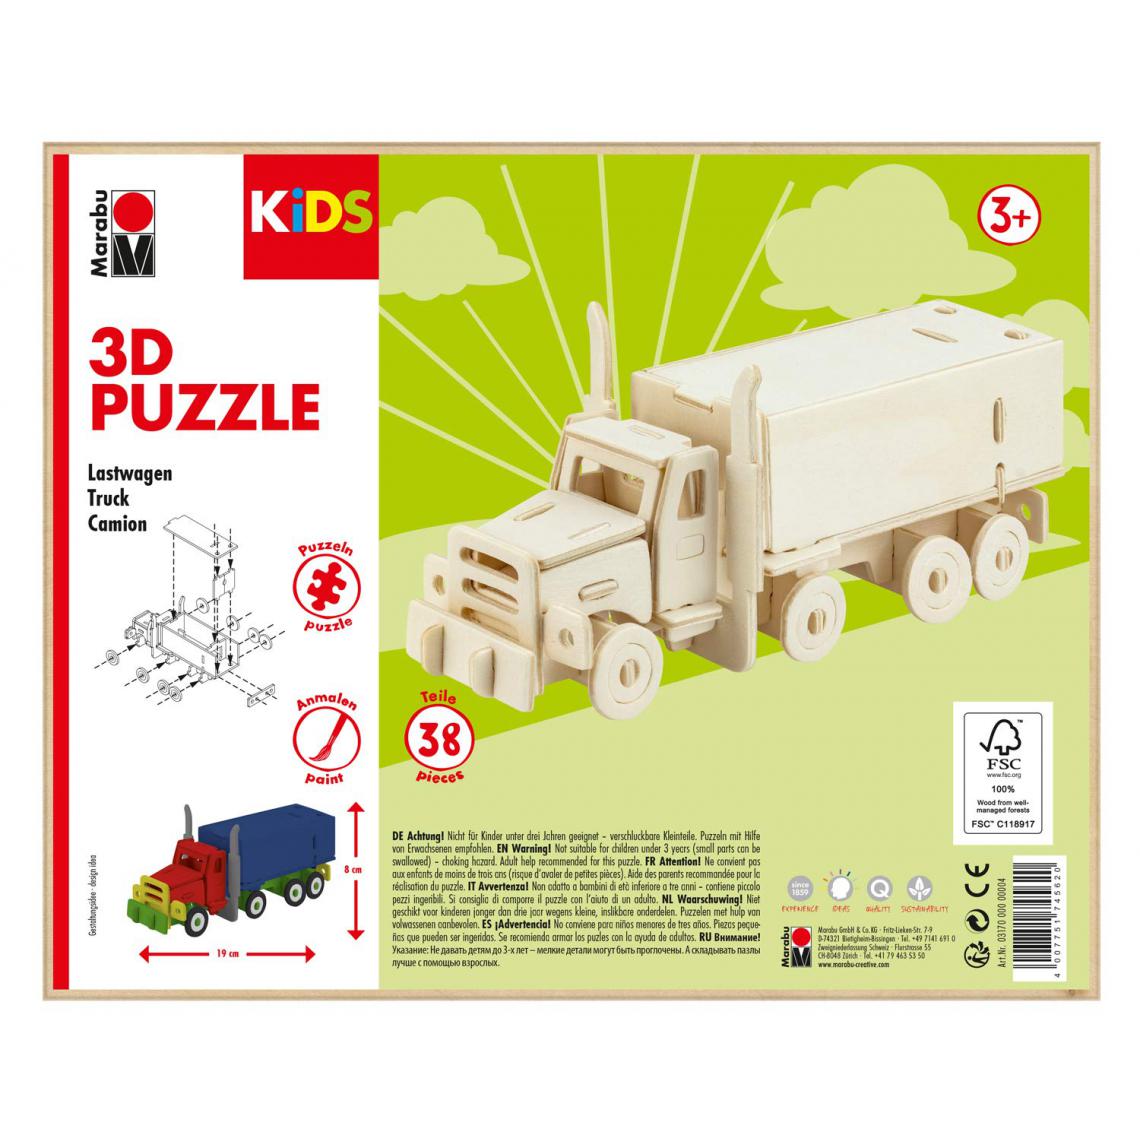 Marabu - Marabu 0317000000004 Kids 3D Puzzle en Bois pour Camion, 38 pièces, env. 19 x 8 cm, Marron - Animaux